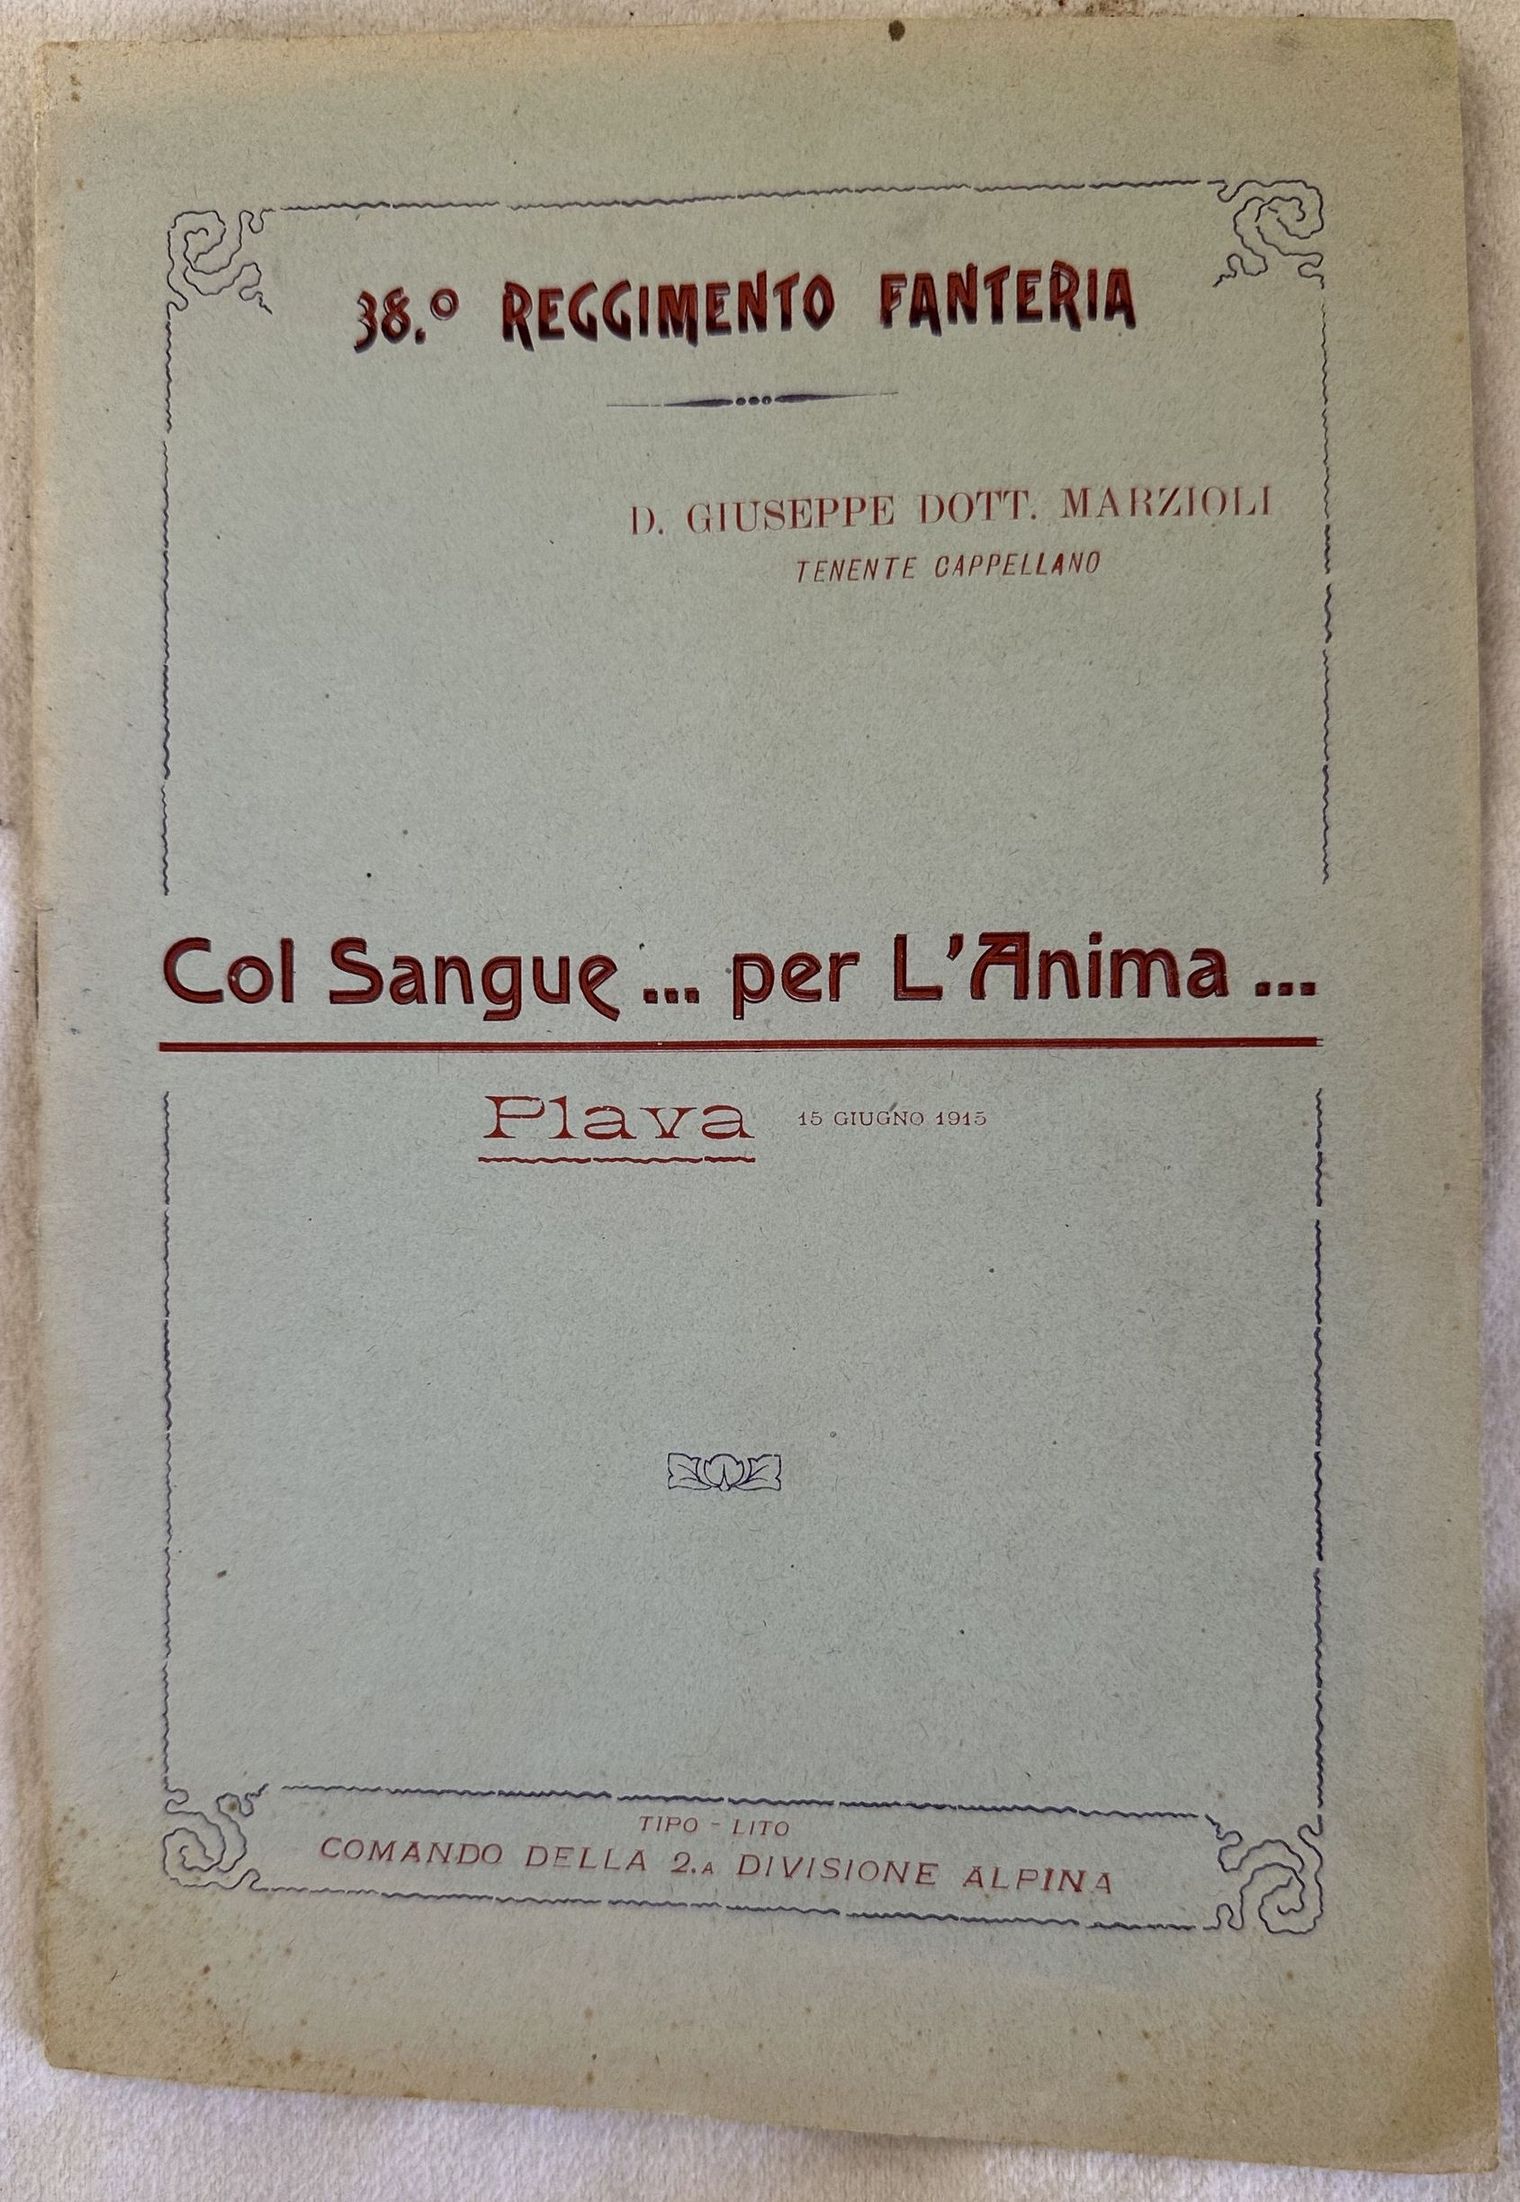 COL SANGUE.PER L'ANIMA. PIAVA 15 GIUGNO 1915